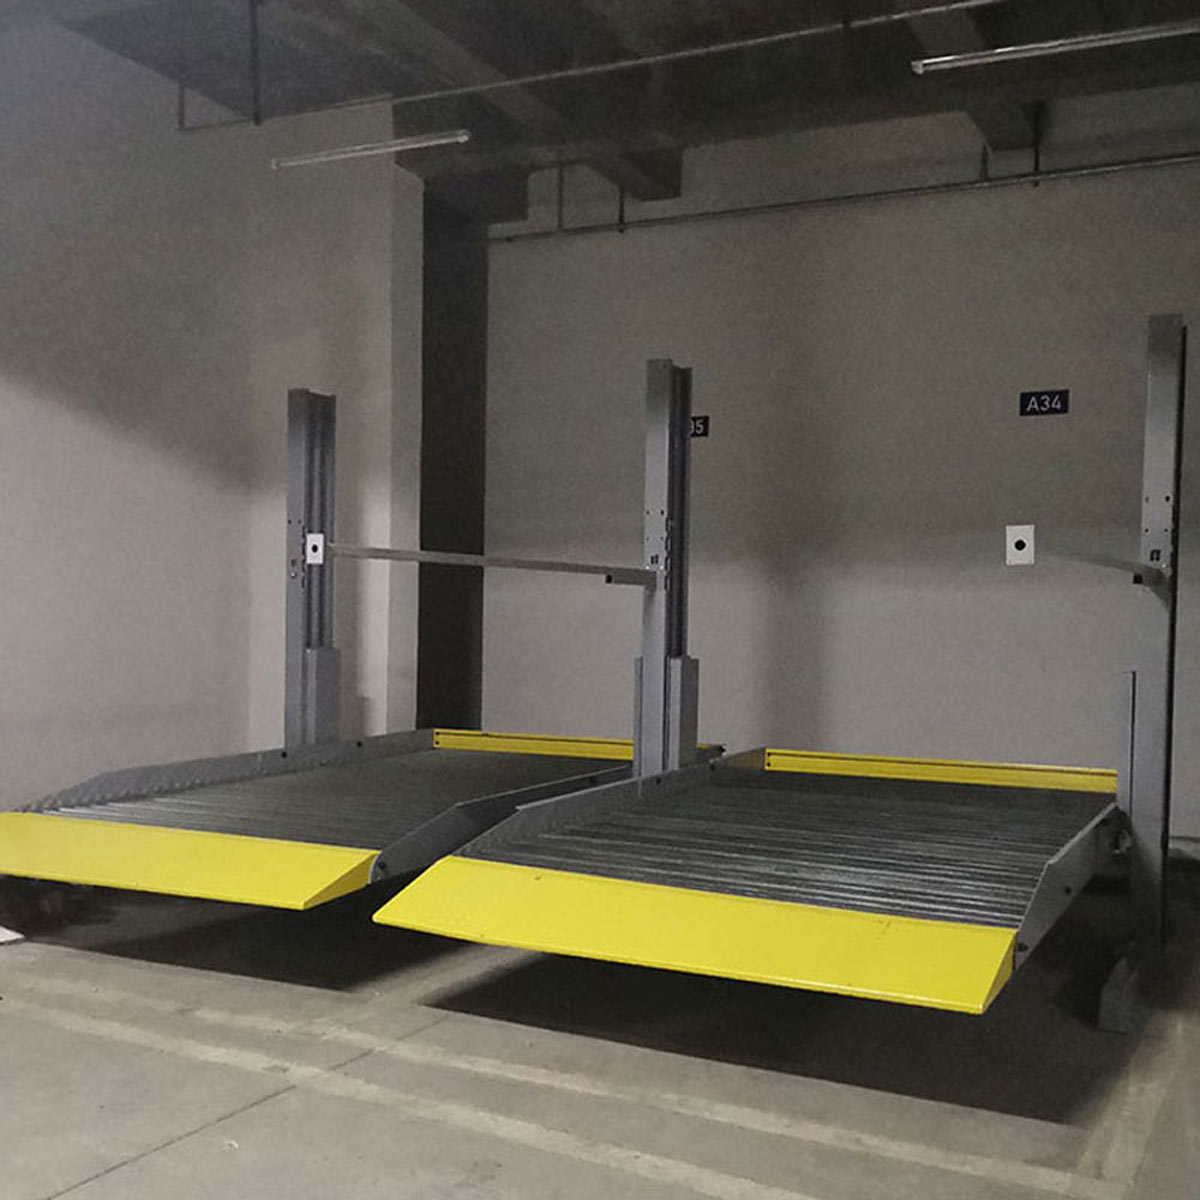 金牛自動化停車庫的設計思路